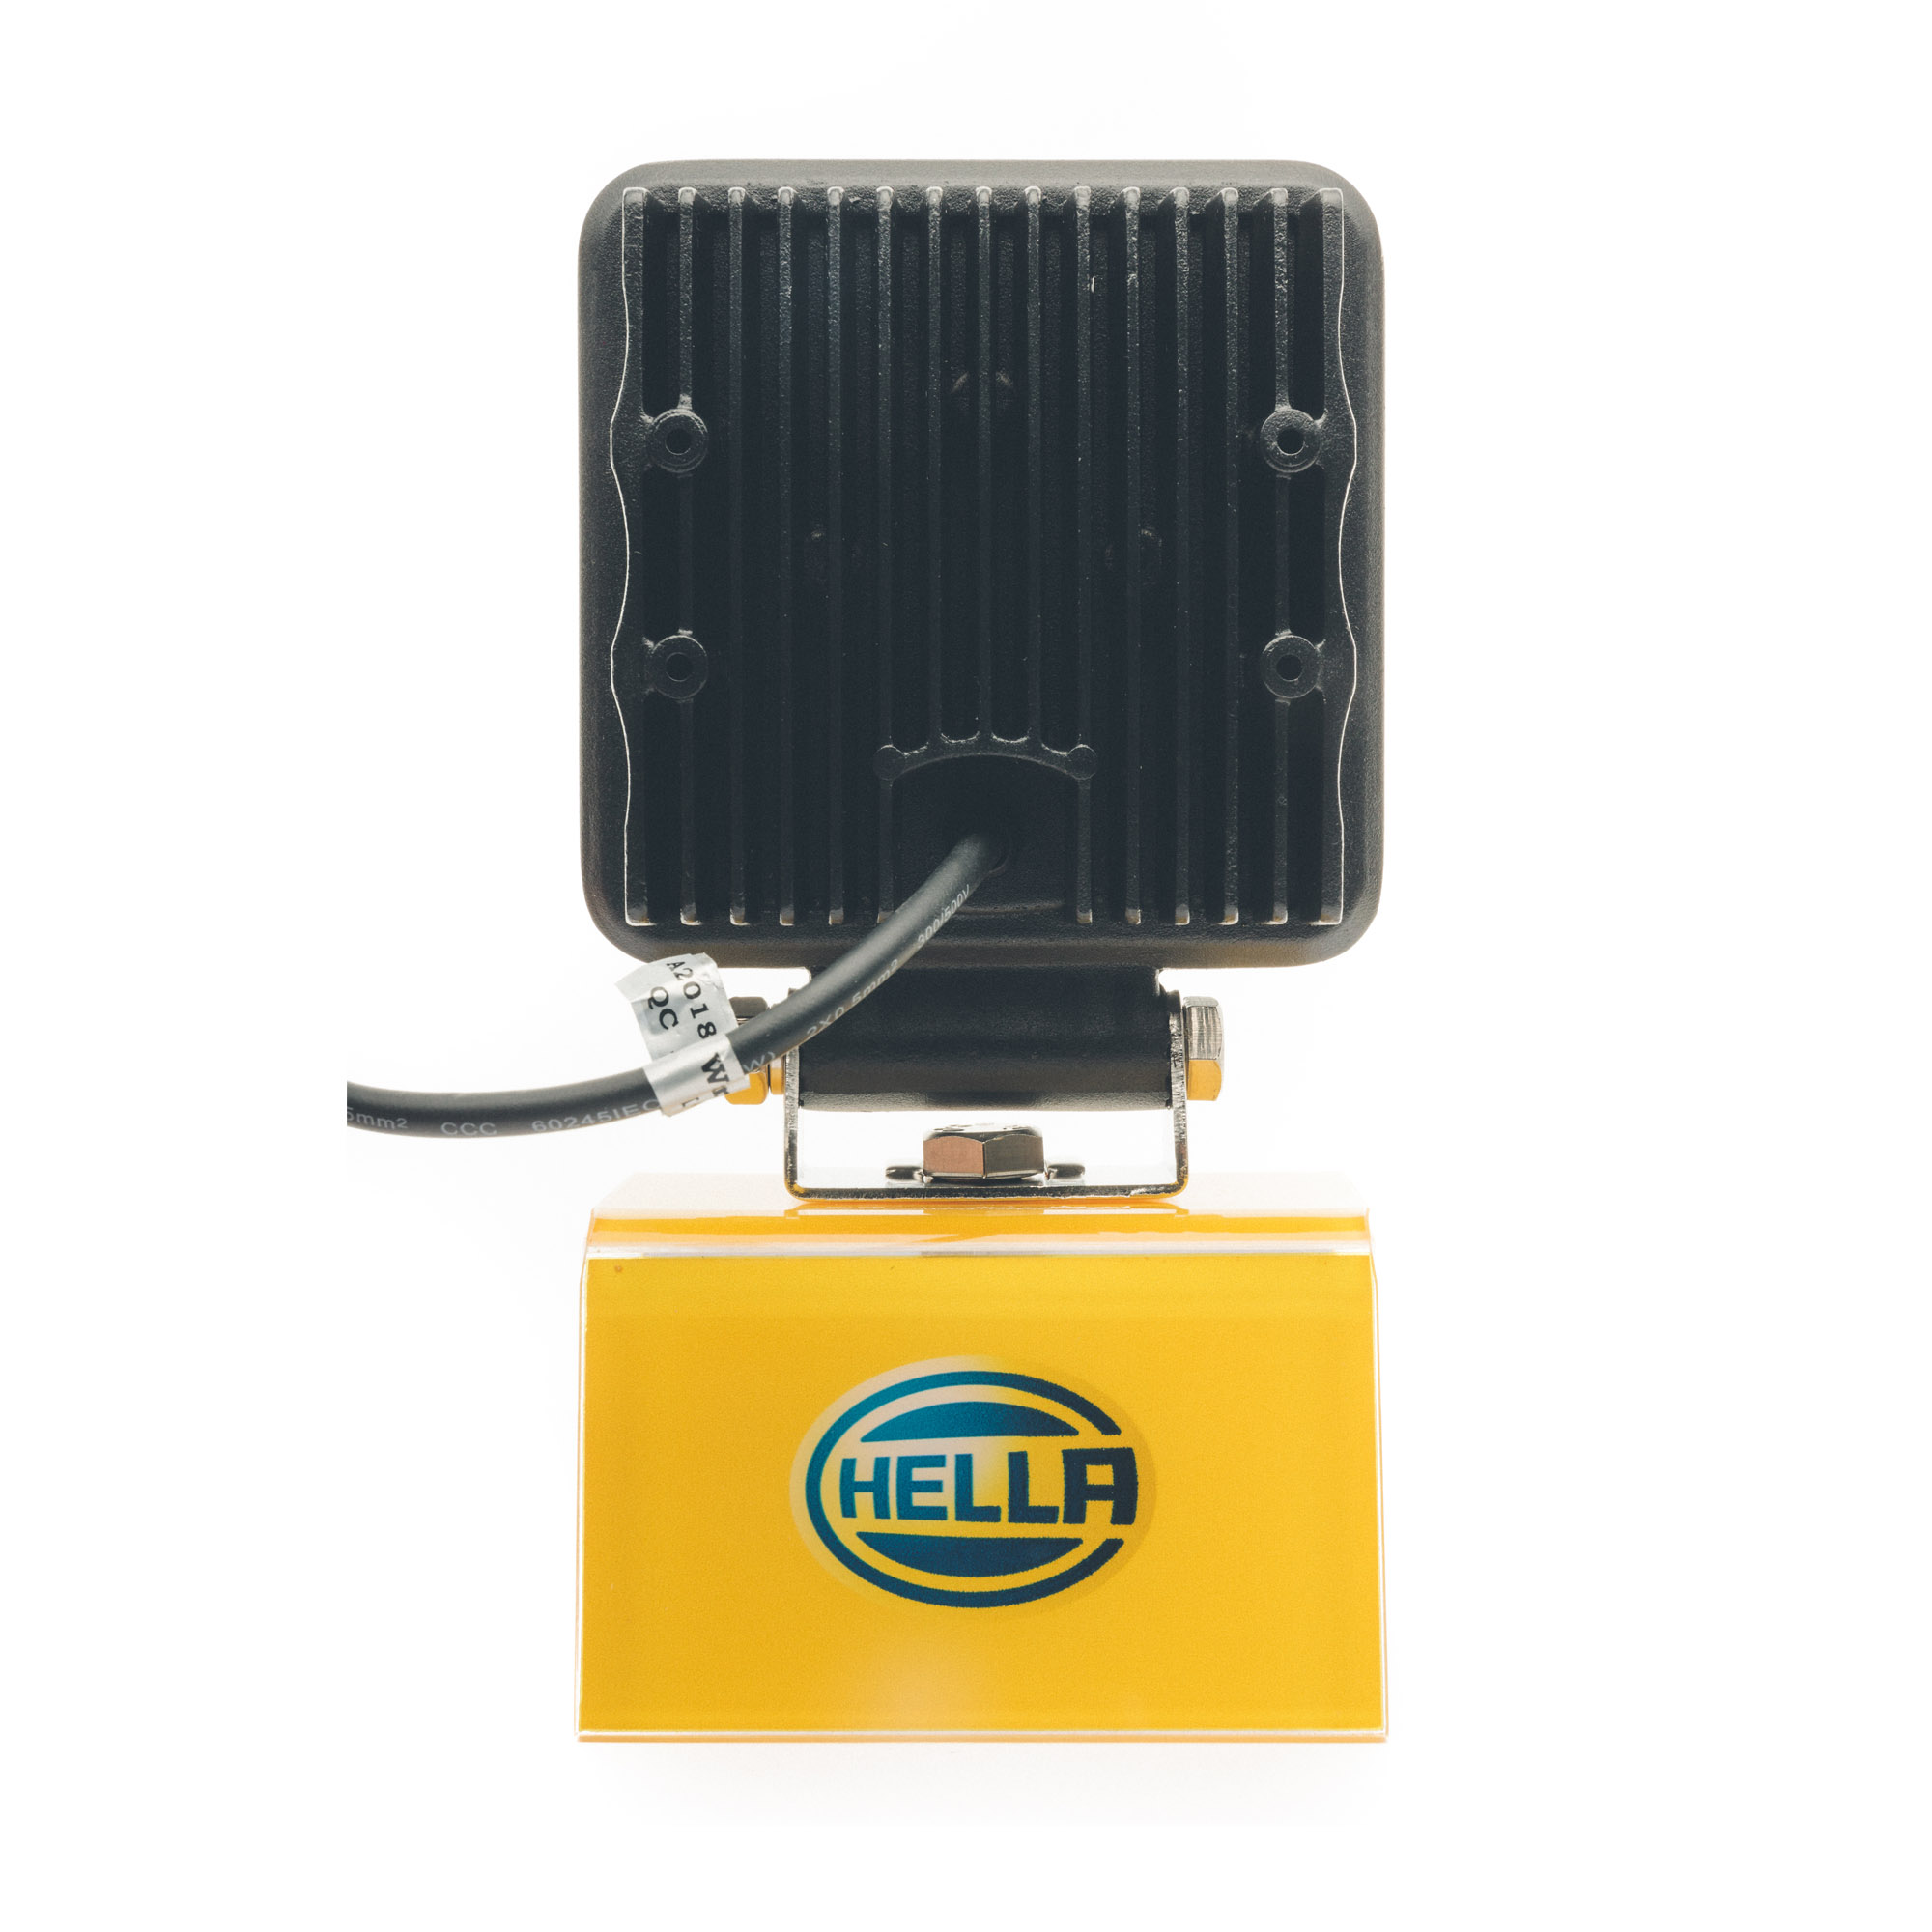 HELLA Valuefit S2500 LED Work Light - 1GA 357 106 022 - auto2u